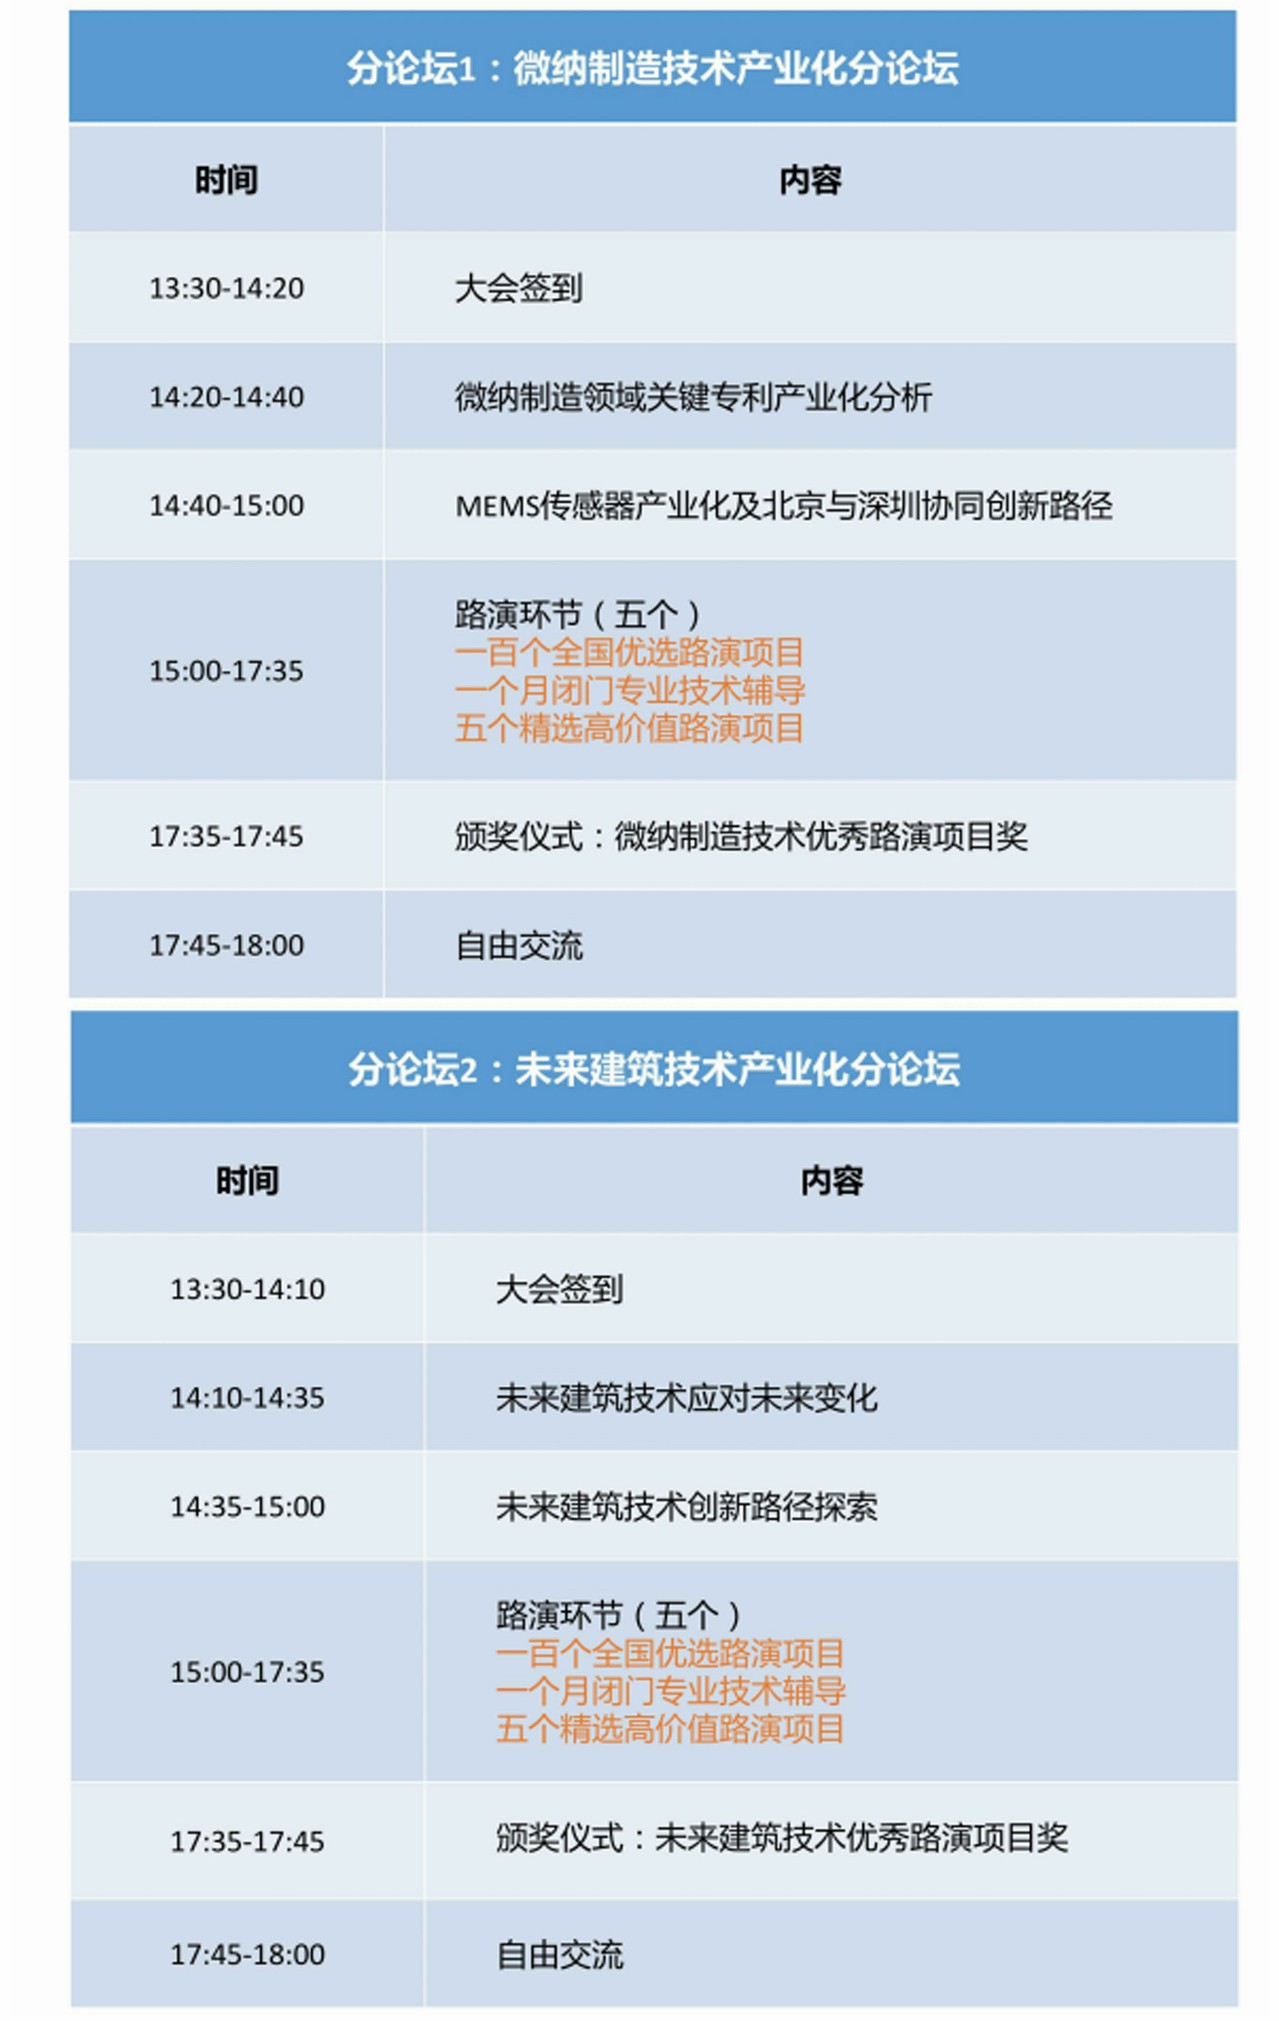 “创新引领 转化为先” 首届中国专利产业化运营大会10月23日将在京举办